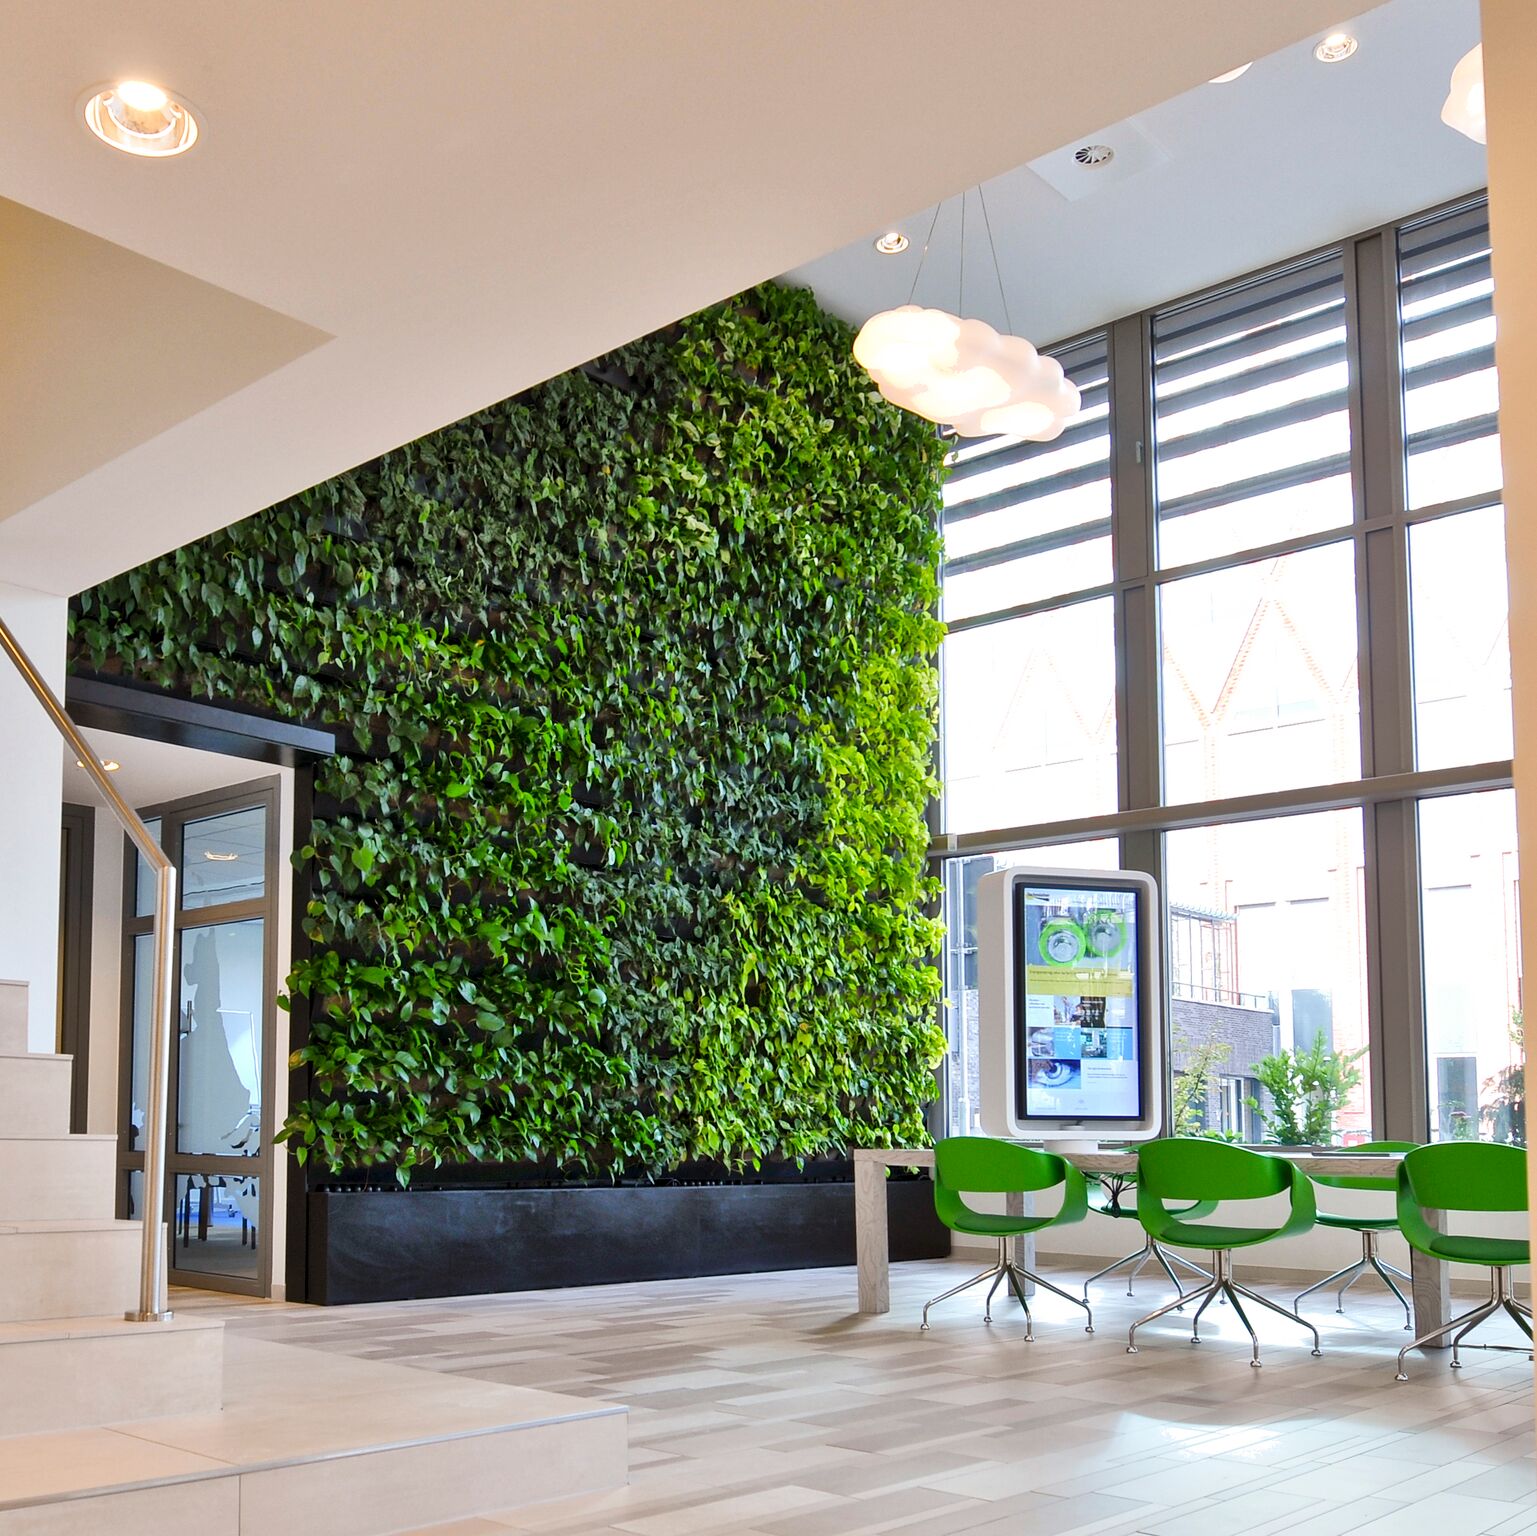 Как озеленить фасад с помощью растений: виды лиан для украшения здания Как украсить дом подвесными кашпо, панно из суккулентов и вертикальными грядками